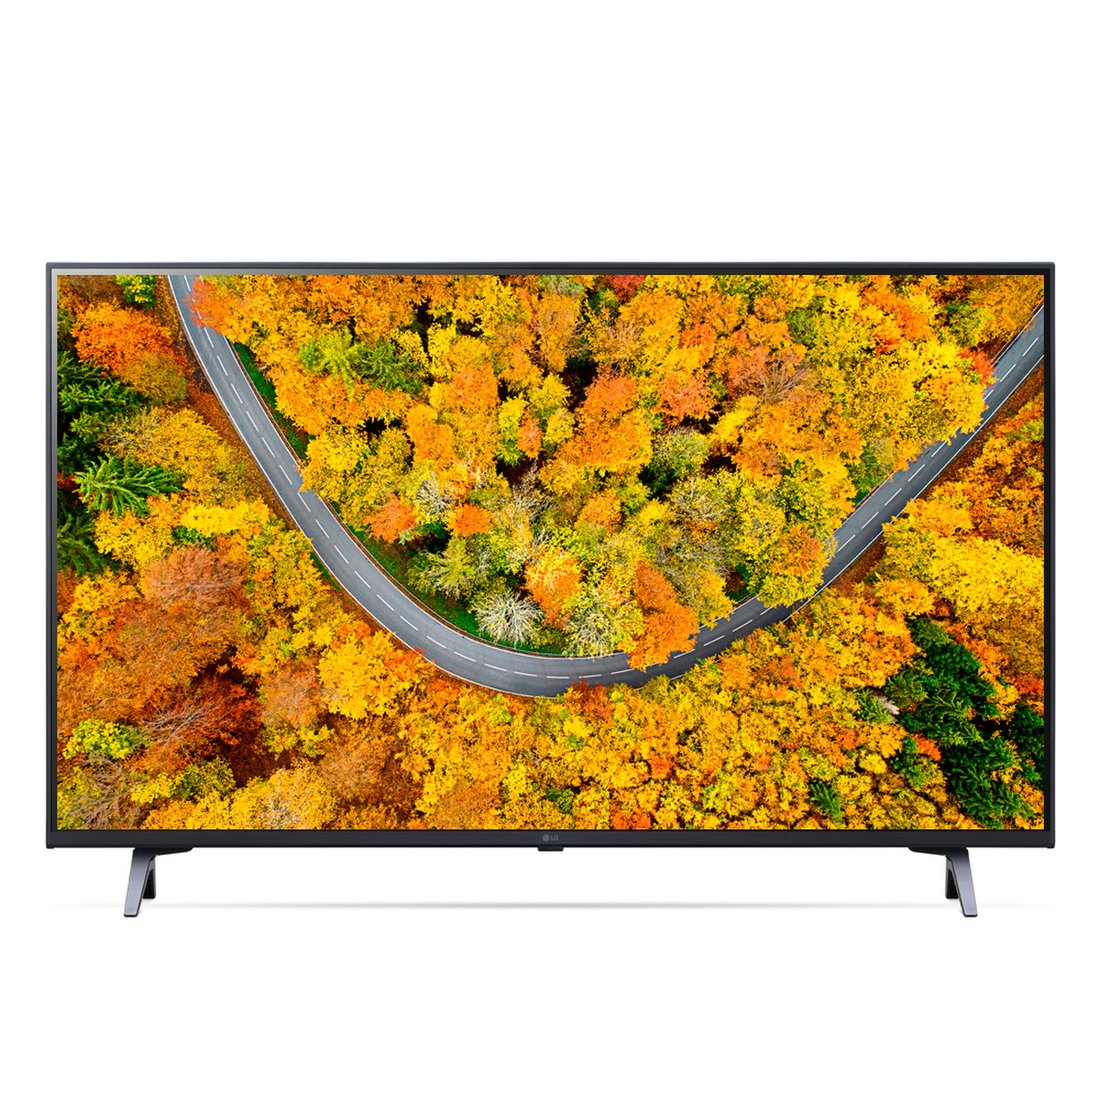 공식판매점][LG전자] LG 울트라HD TV 스탠드형 43UR642S0NC (107cm), 신세계몰